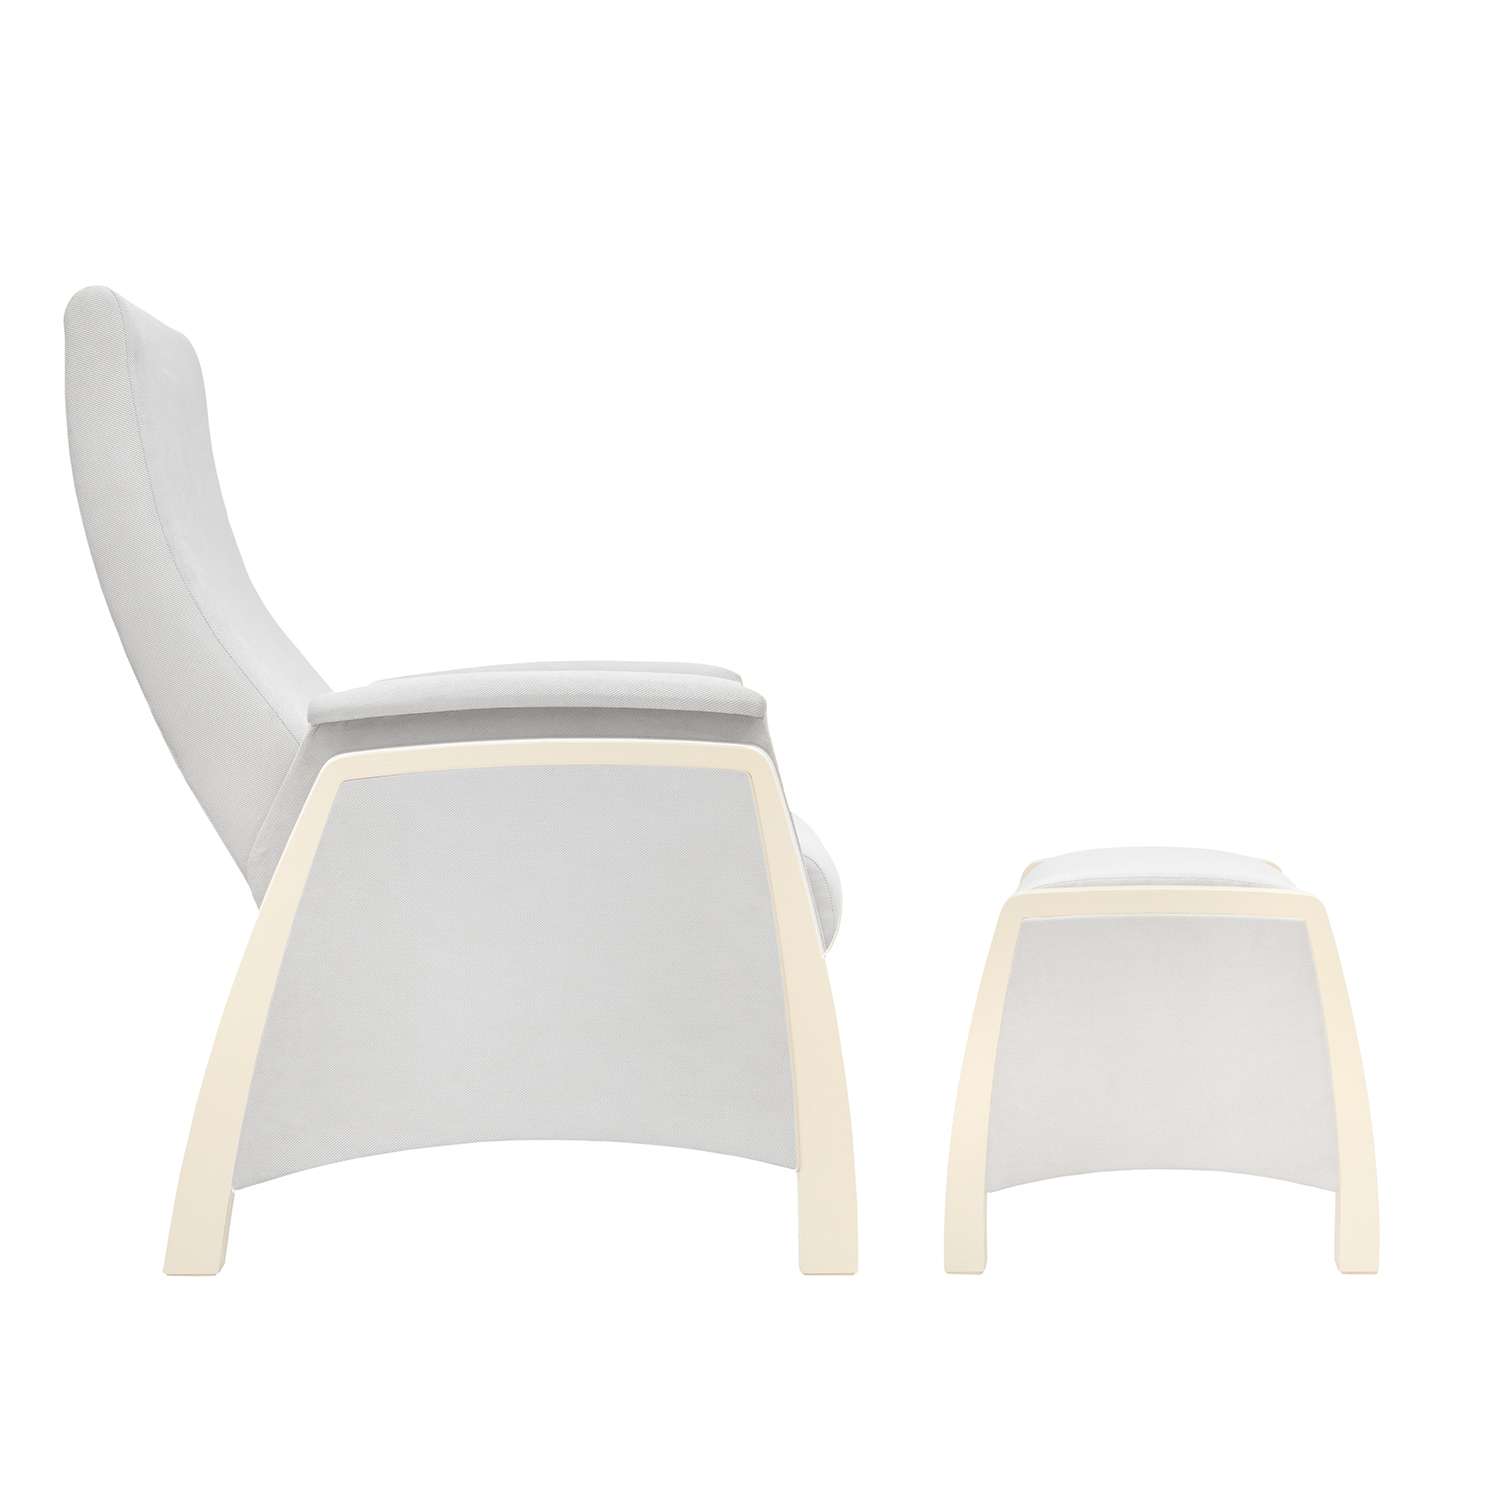 Кресло для кормления Milli с пуфом Sky Дуб шампань / ткань Verona Light Grey - фото 2